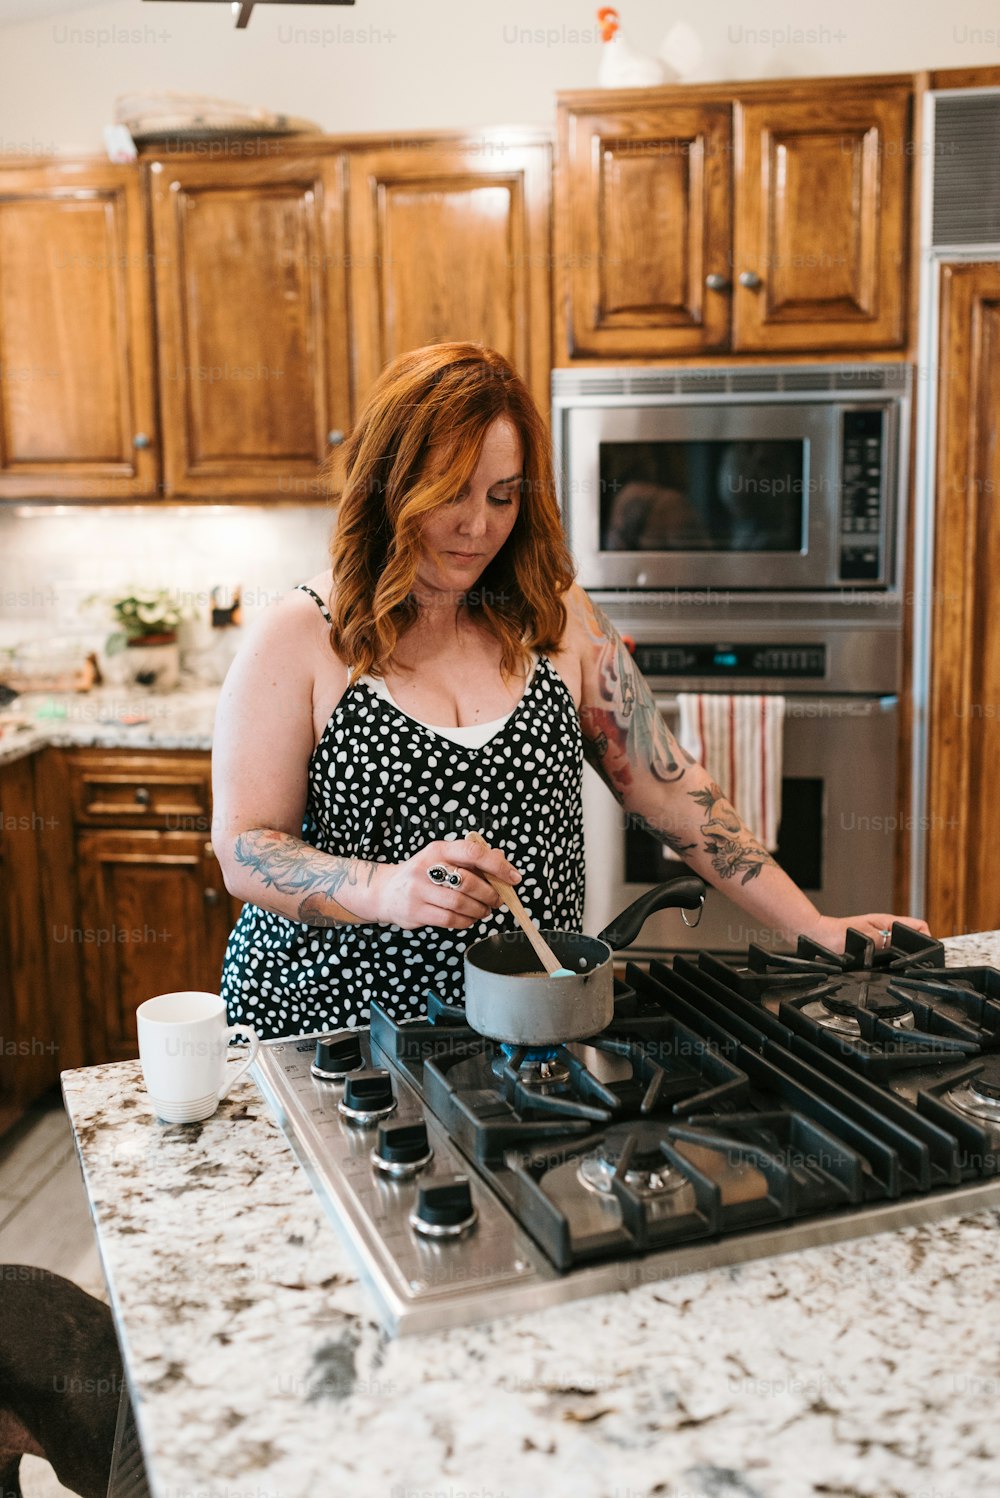 Una mujer en una cocina preparando comida en una estufa